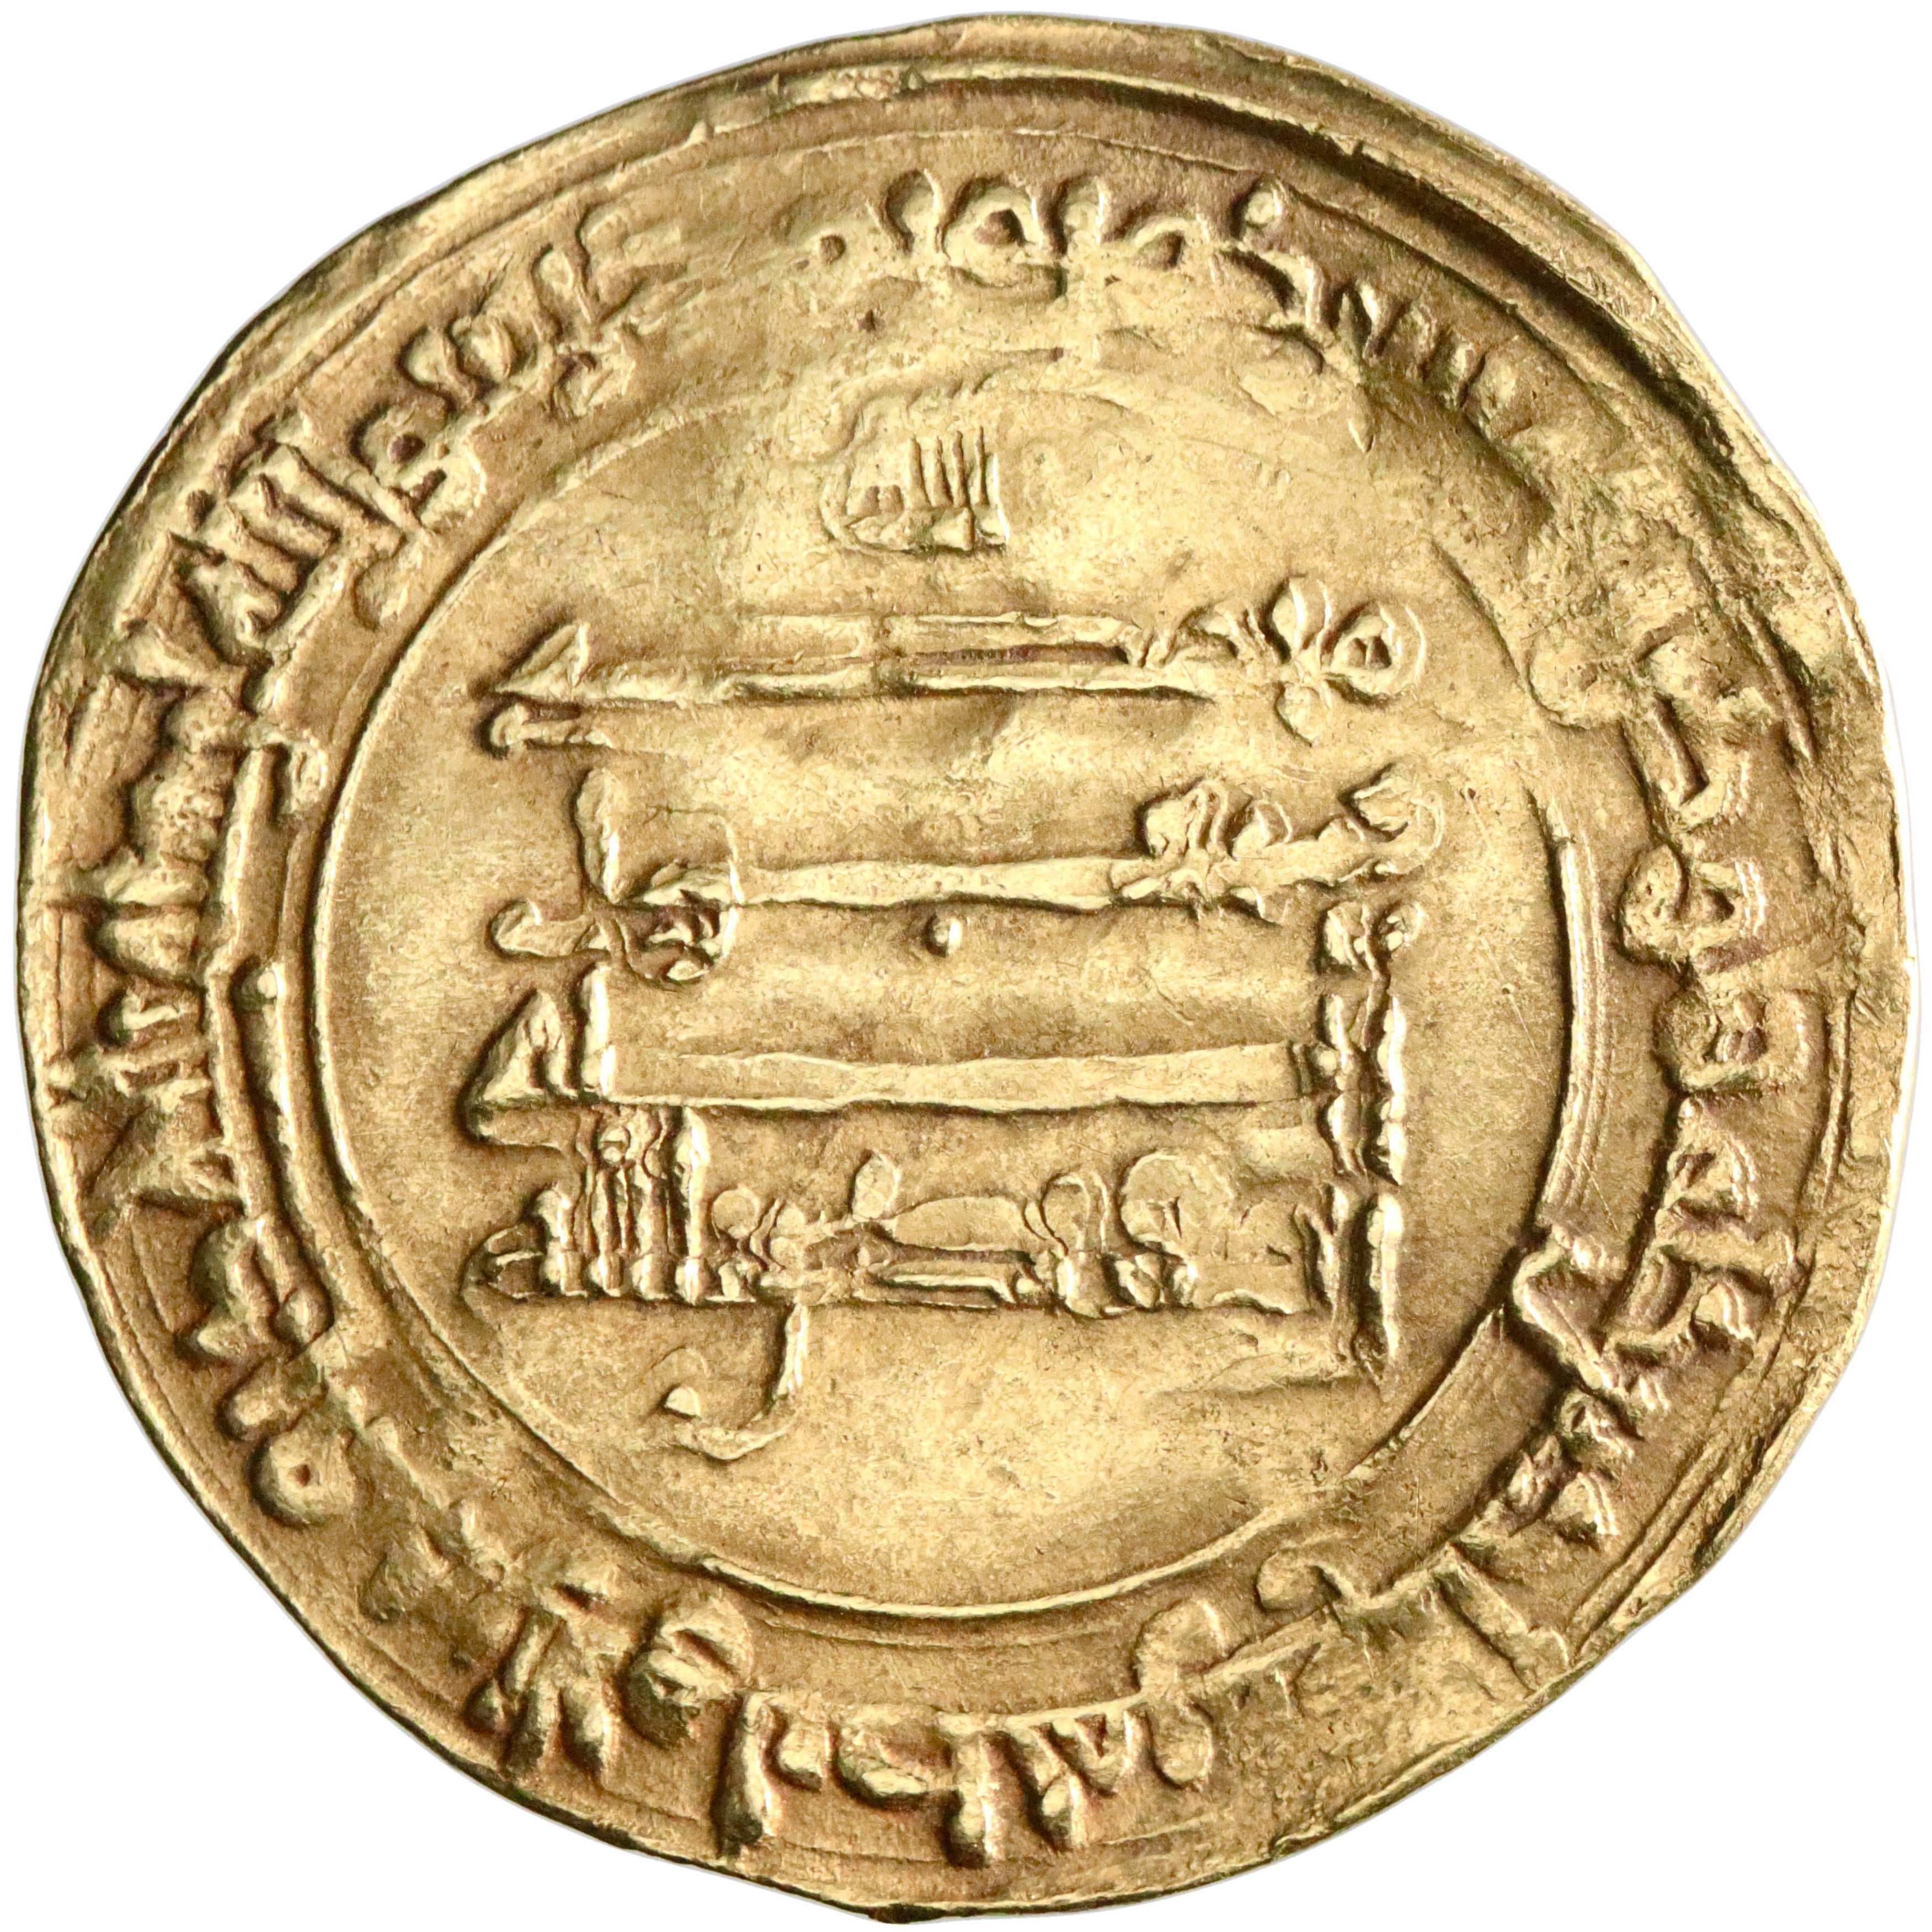 Abbasid, al-Muqtadir, gold dinar, Filastin (Palestine) mint, AH 309, citing Abu al-'Abbas